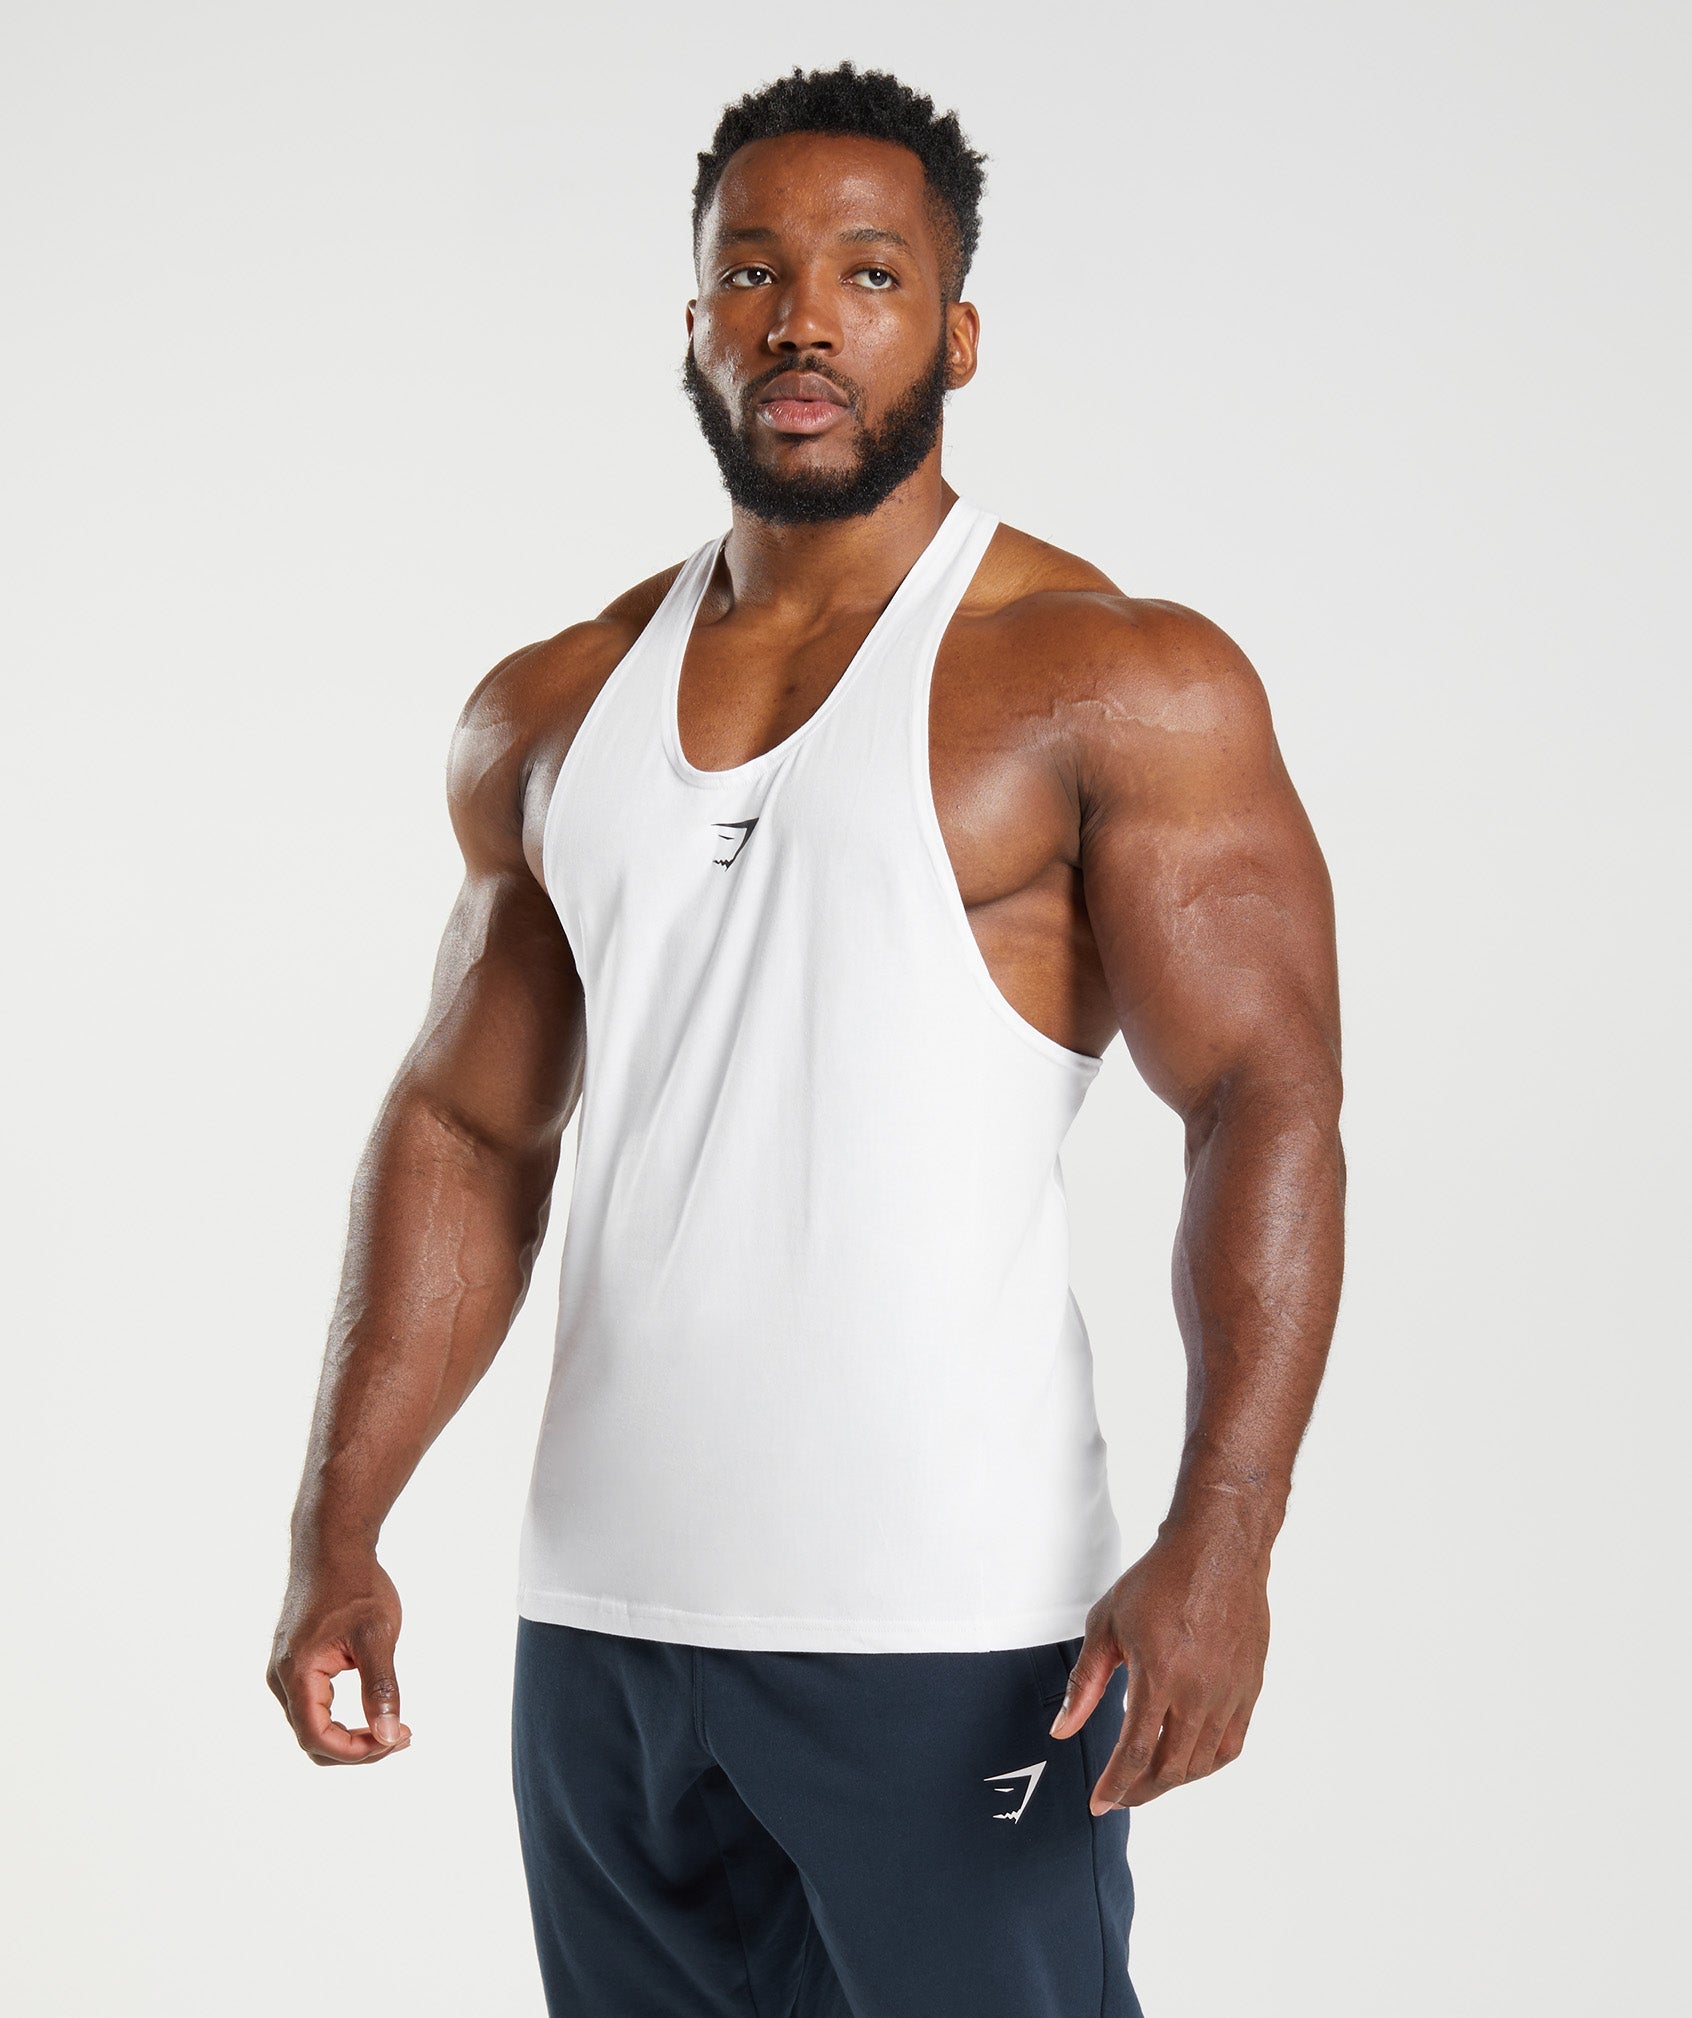 New Men's Gymshark Releases  Latest Designs in Activewear